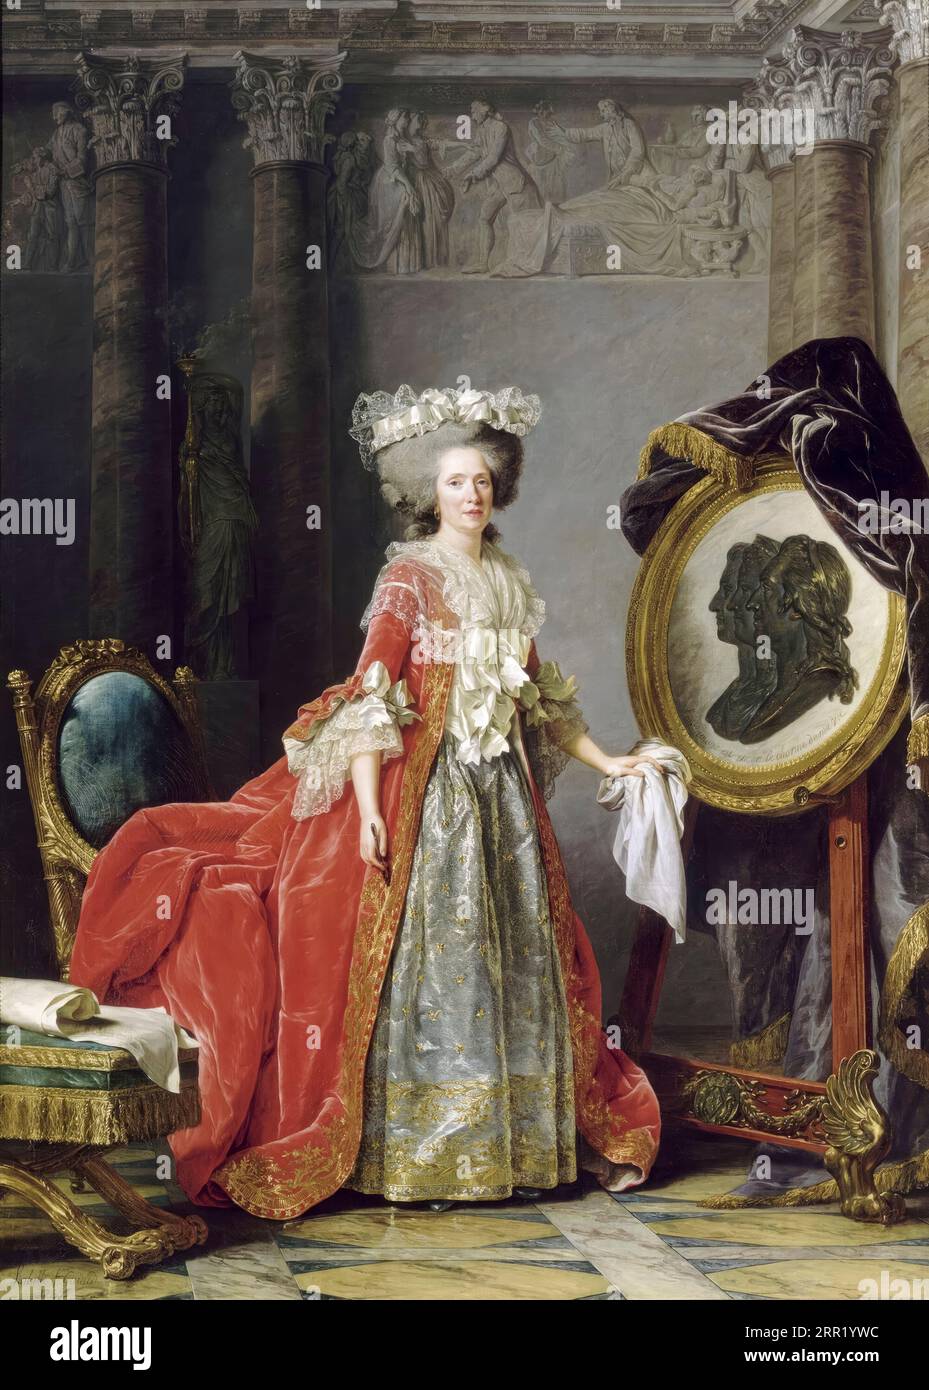 Princess Marie Adélaïde de France (1732-1800) called Madame Adélaïde, portrait painting in oil on canvas by Adélaïde Labille-Guiard, 1787 Stock Photo